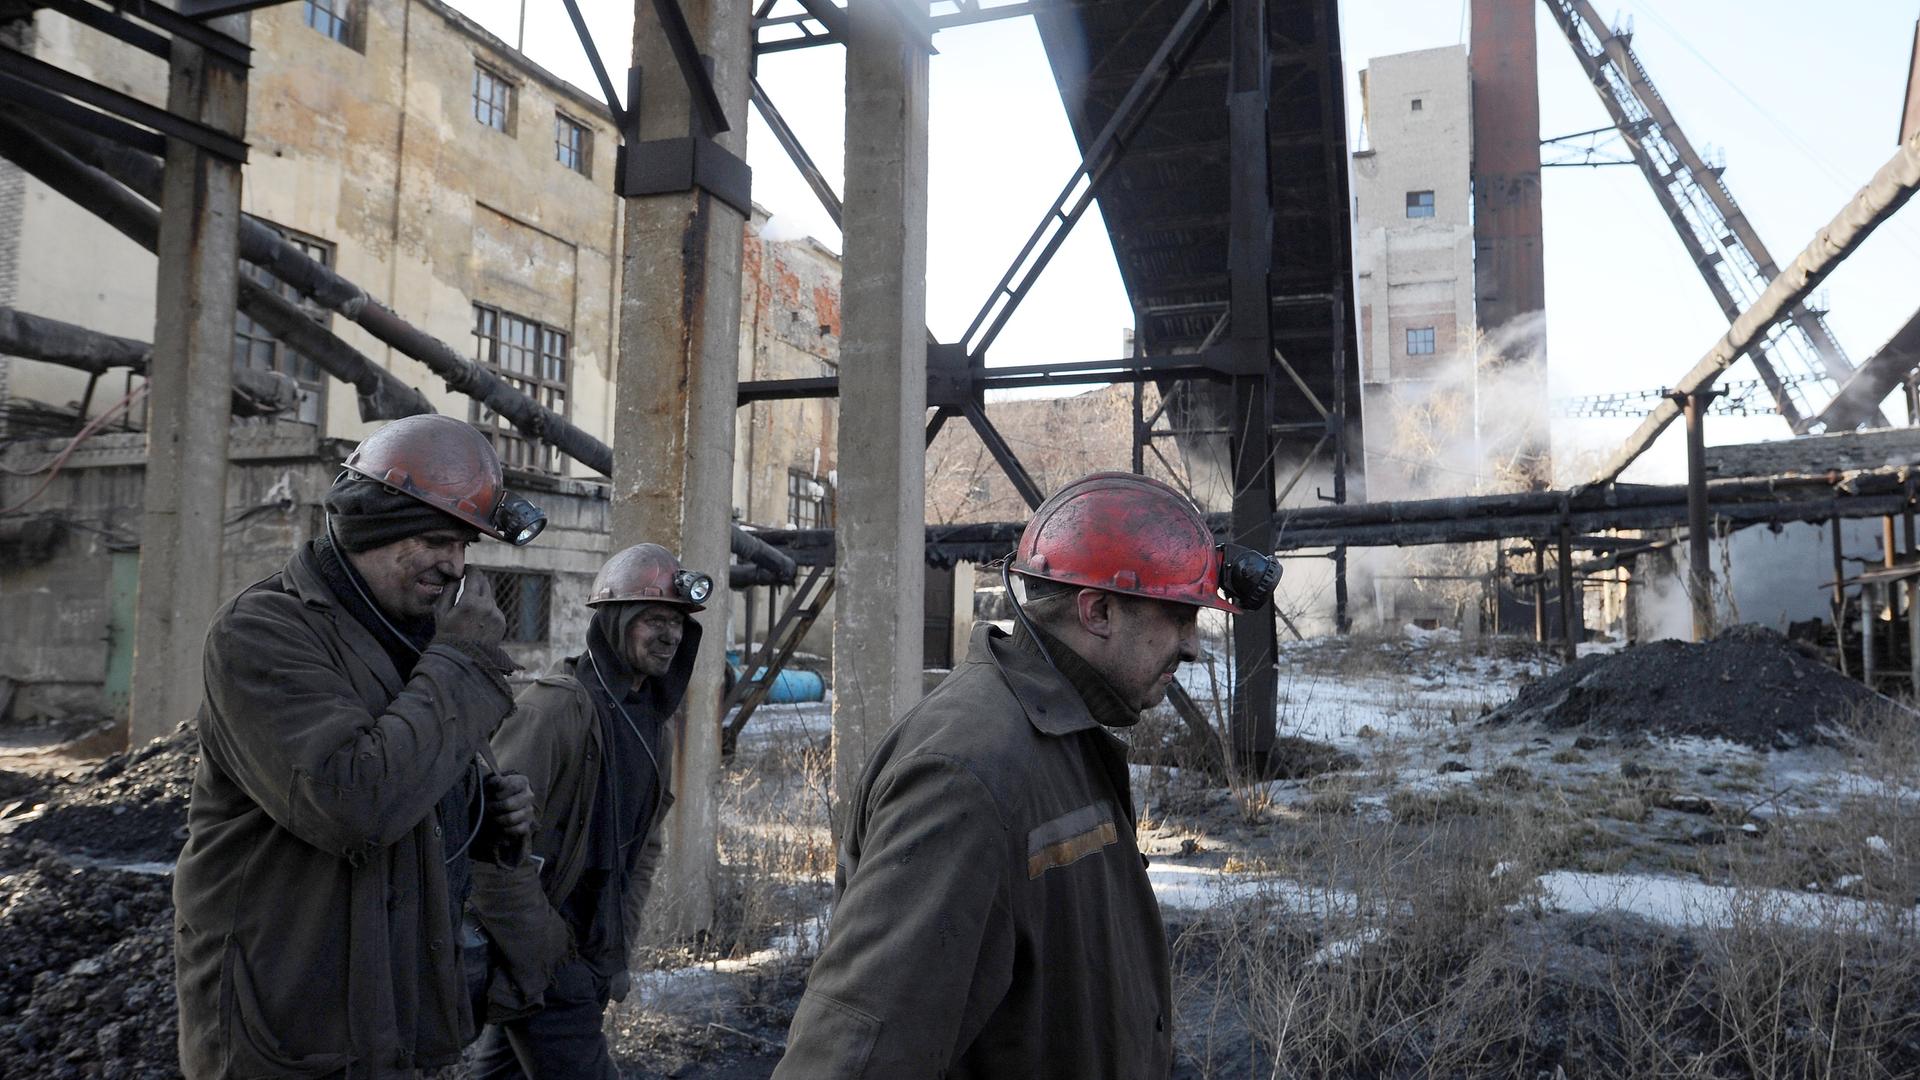 Bergarbeiter gehen über das Gelände einer Kohlemine mit vielen Gebäuden, Strahlkonstruktionen und anderen Bauten.